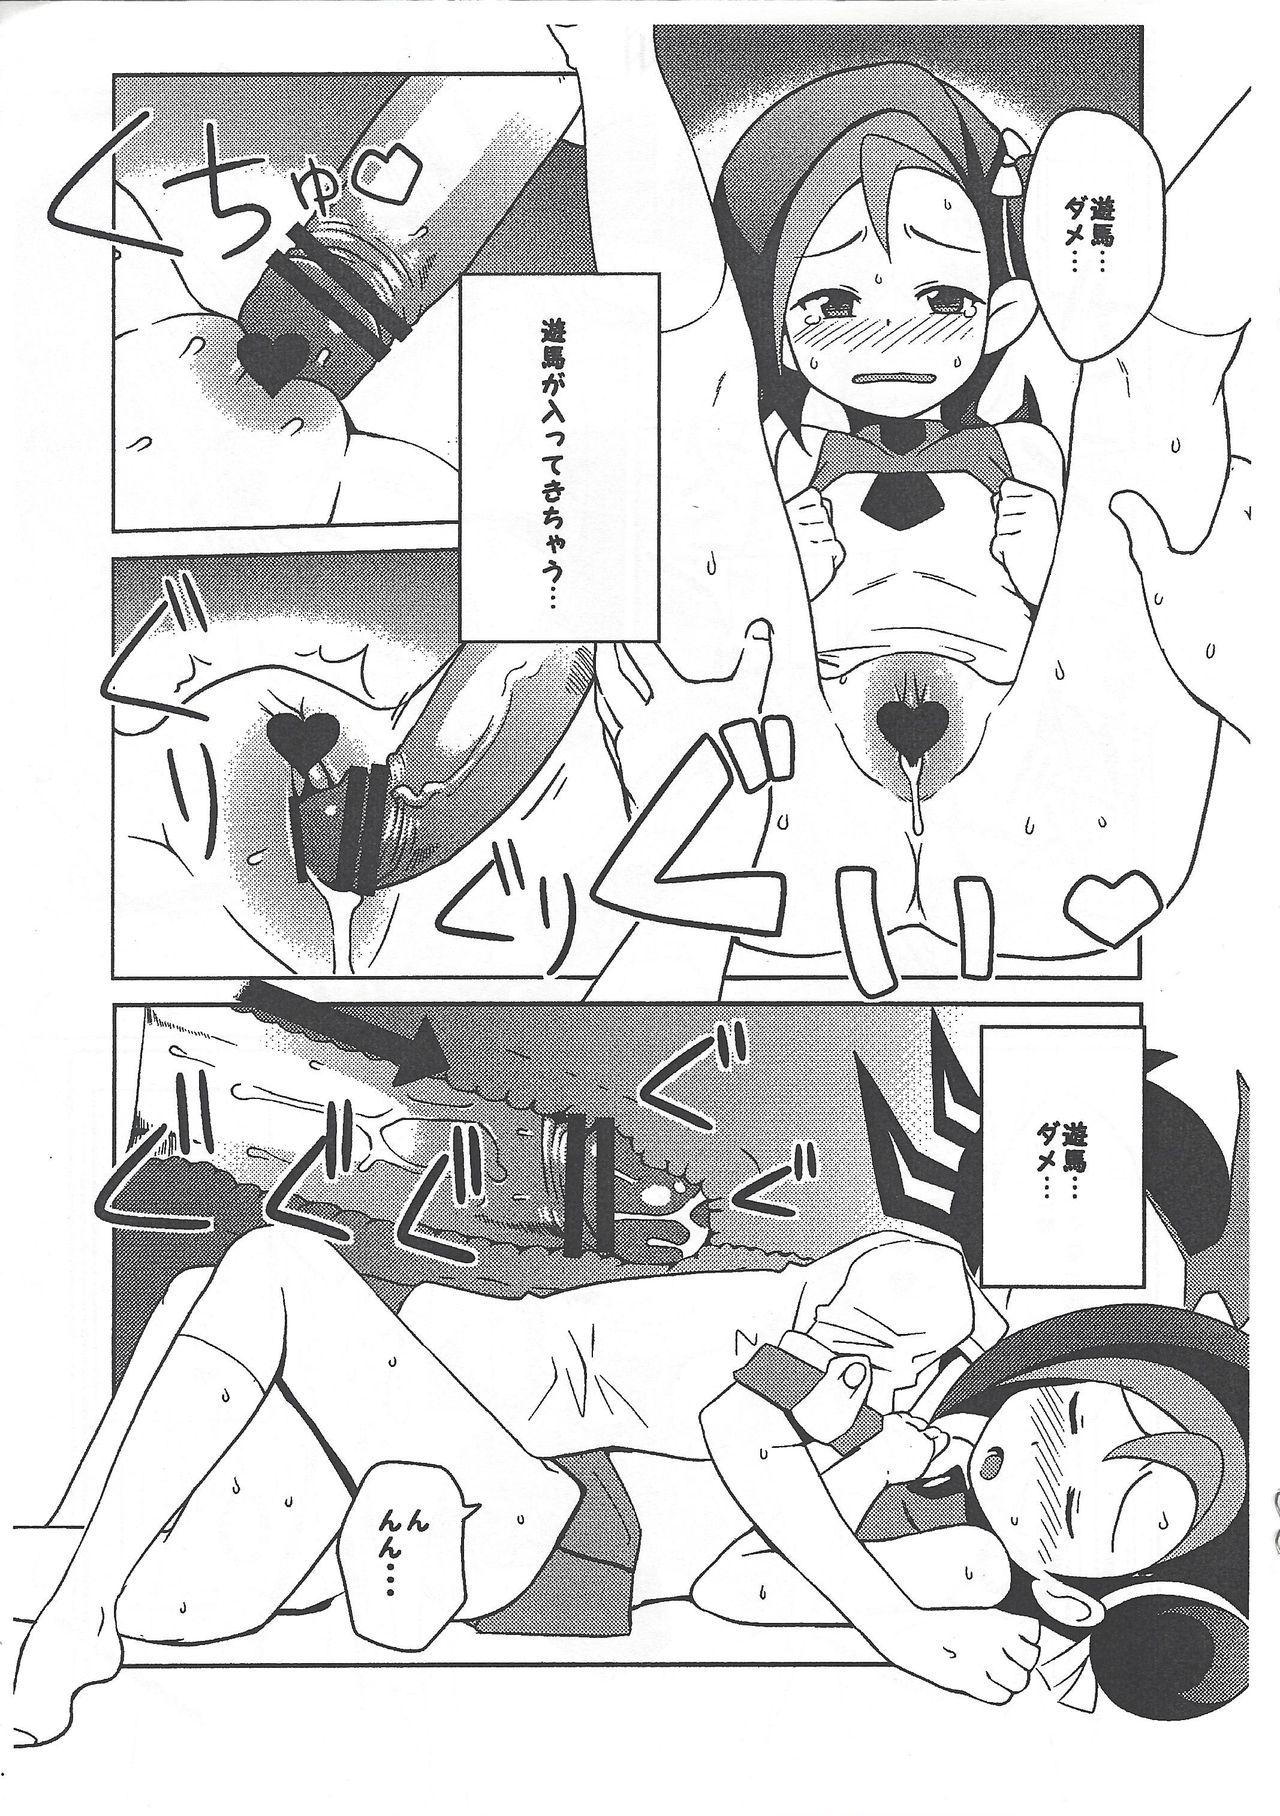 Roughsex (Puniket 23) [Funi Funi Lab (Tamagoro)] Yu-Gi-Oh ZEXAL Kotori-chan Book (Tentative) (Yu-Gi-Oh! ZEXAL) - Yu-gi-oh zexal Star - Page 9